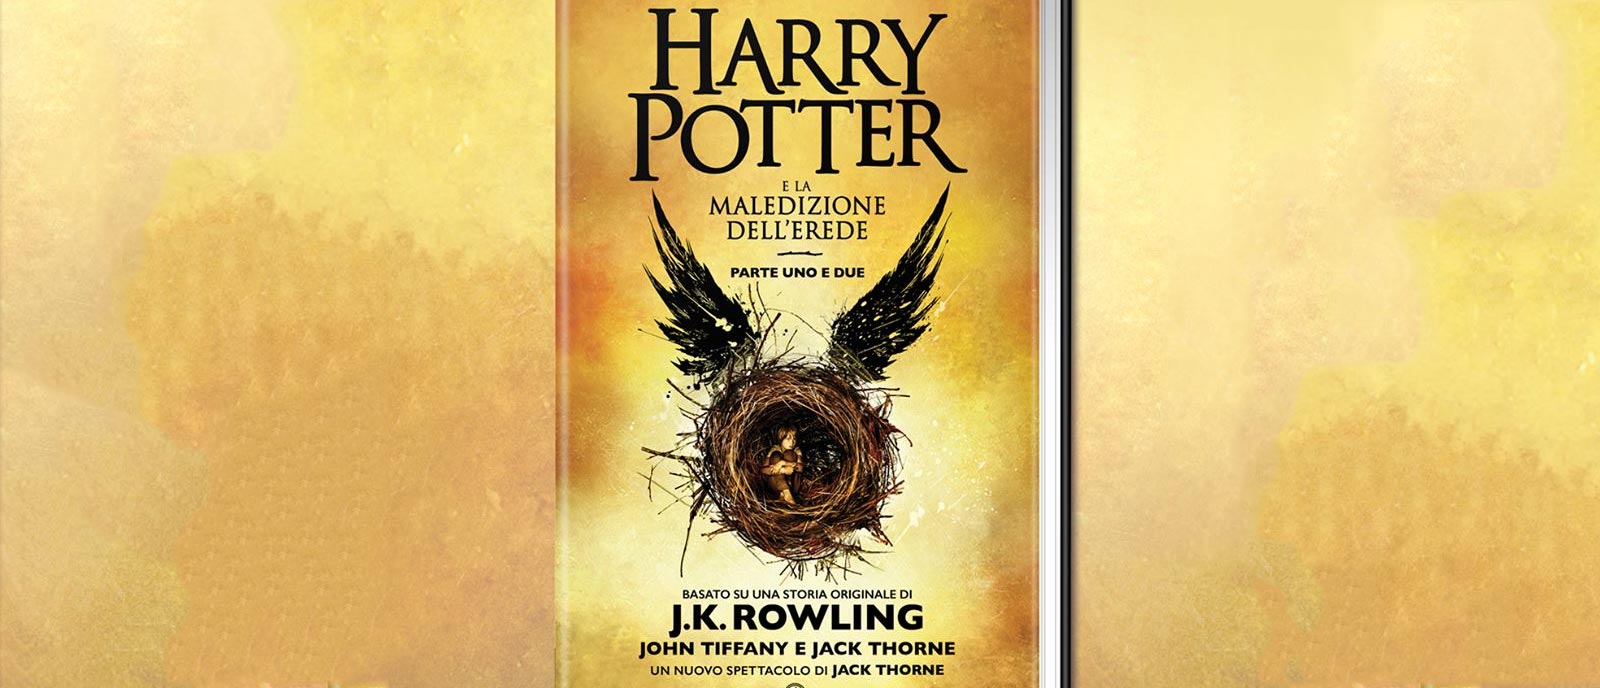  Harry Potter e la maledizione dell'erede (Italian version of Harry  Potter and the Cursed Child) (Italian Edition): 9788869187490: J. K.  Rowling: Books